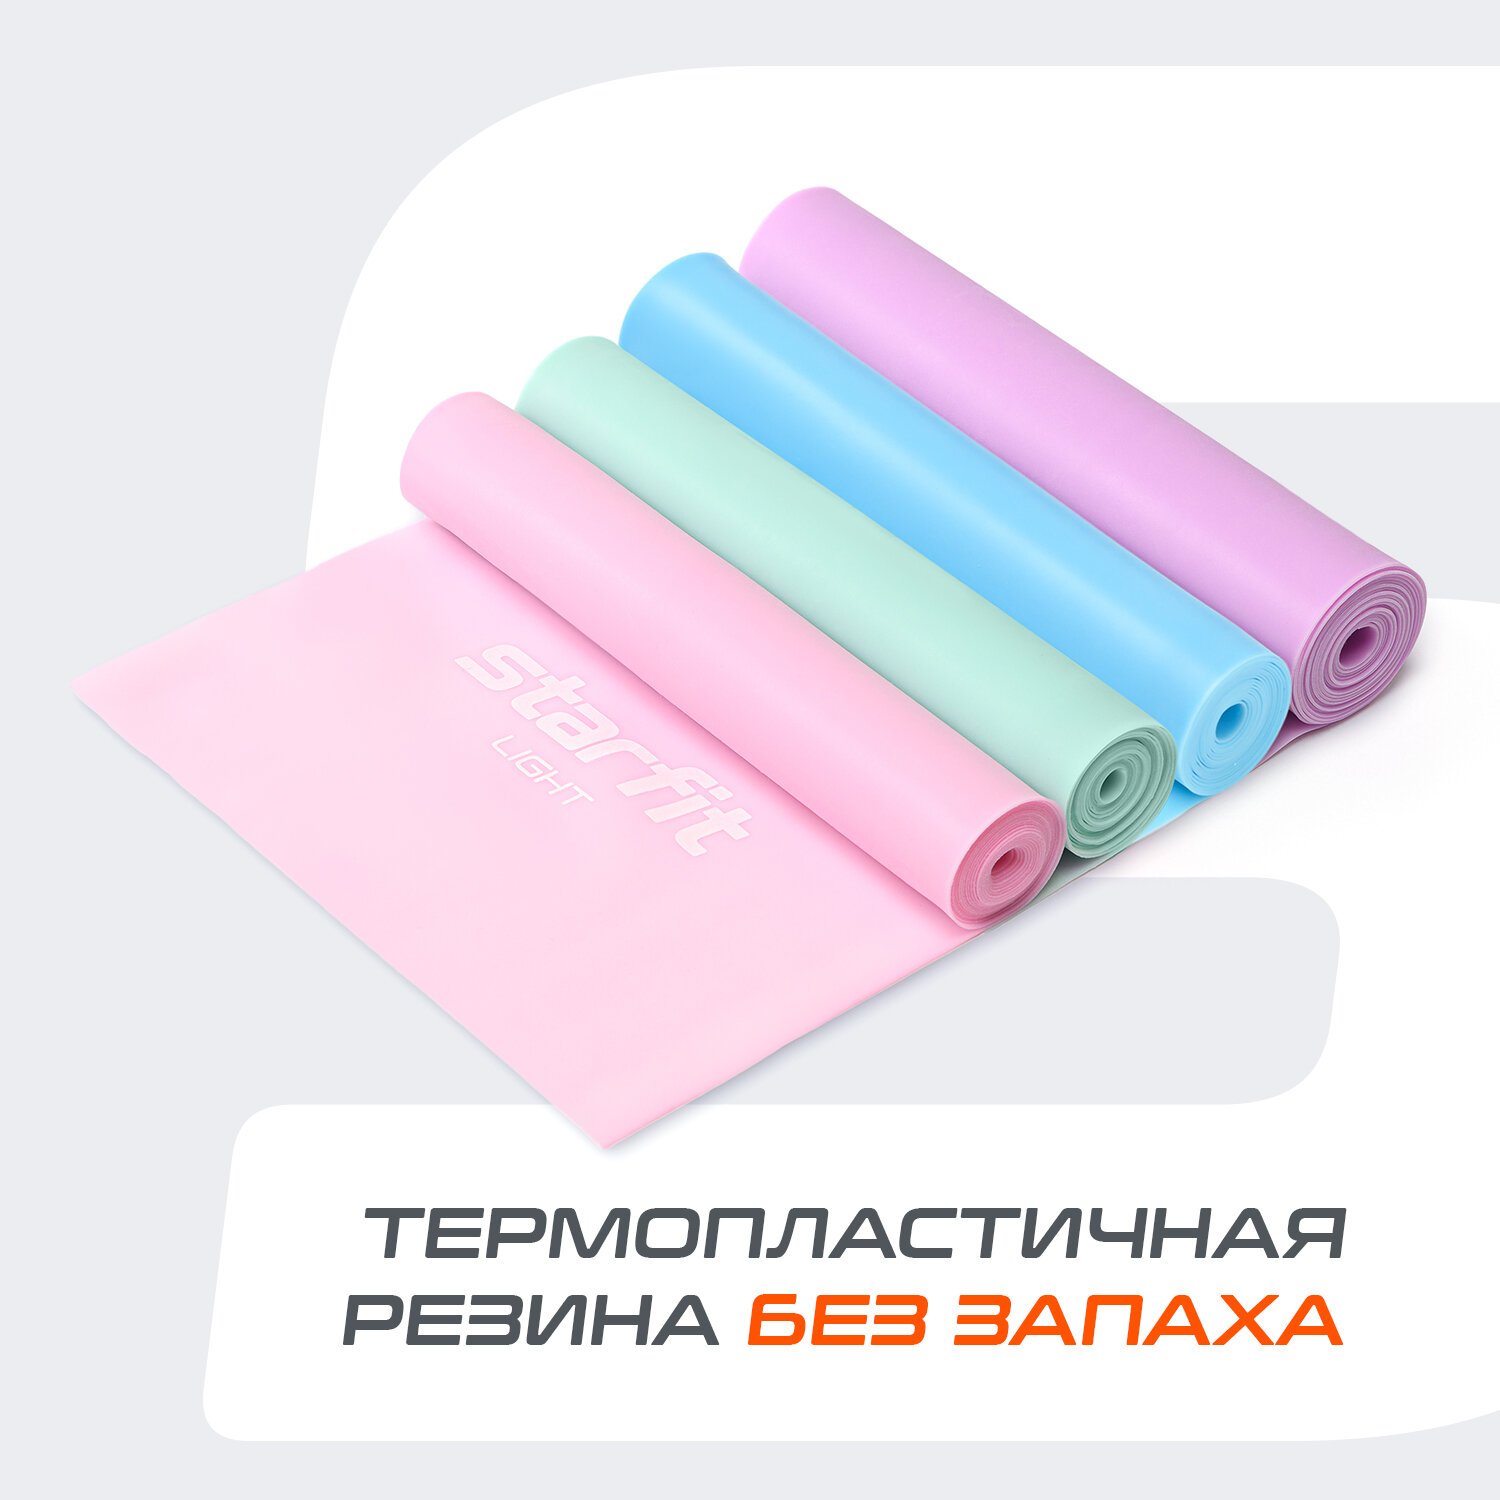 Лента для пилатеса STARFIT Core ES-201 1200*150*0,35 мм, розовый пастель